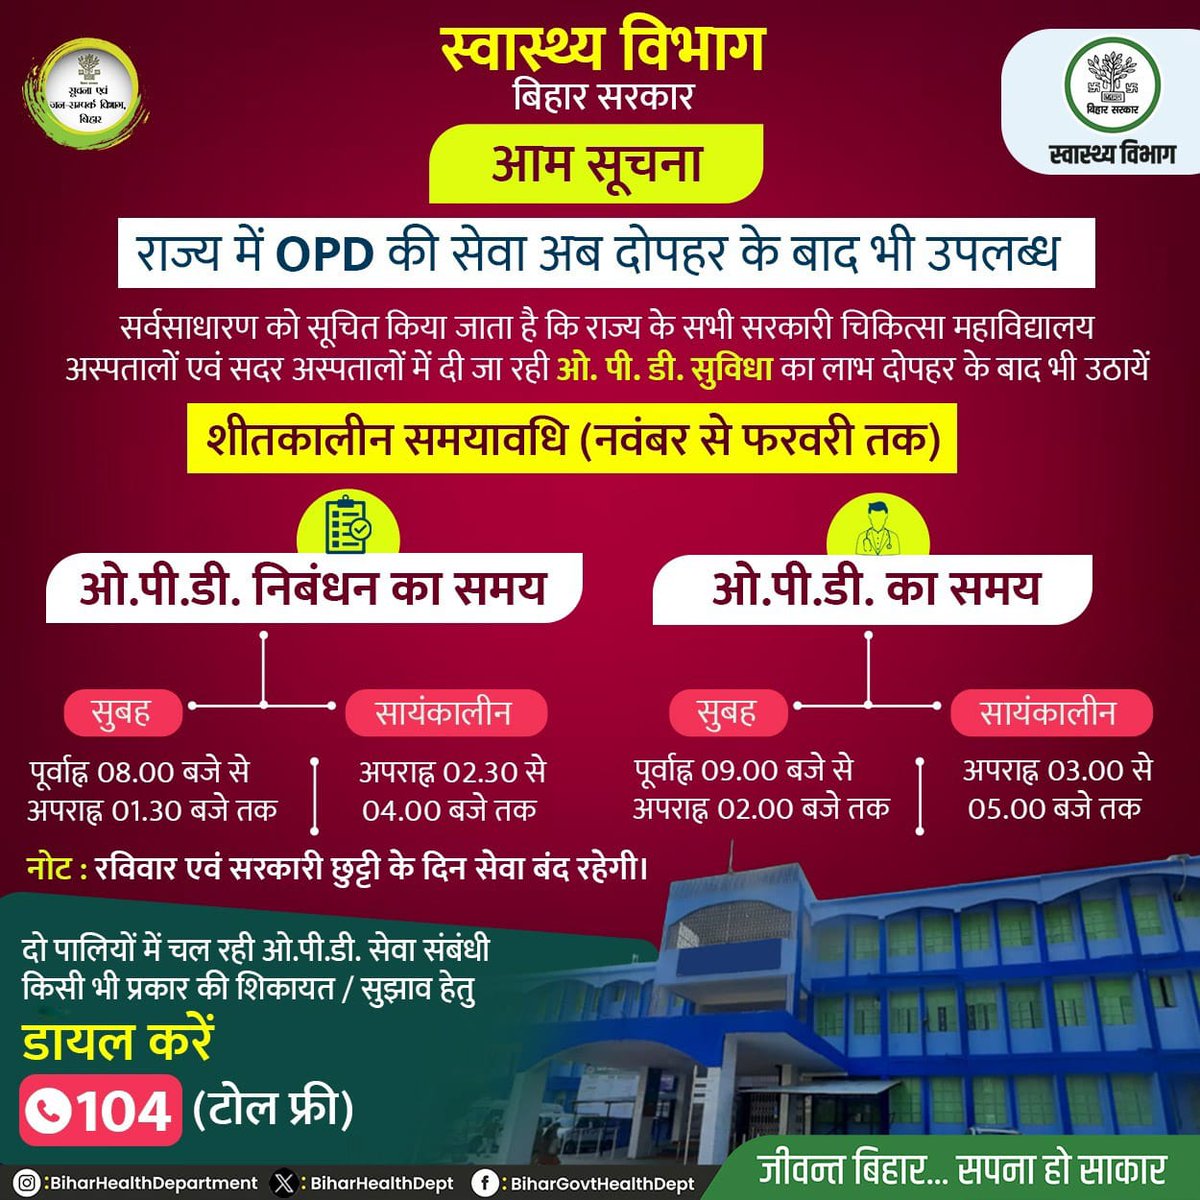 आम सूचना ! सर्वसाधारण को सूचित किया जाता है कि राज्य के सभी सरकारी चिकित्सा महाविद्यालय अस्पतालों एवं सदर अस्पतालों में मरीजों को दी जाने वाली ओ.पी.डी की सुविधा का समय निम्नलिखित हैं। @yadavtejashwi @IPRD_Bihar @BiharHealthDept @SHSBihar